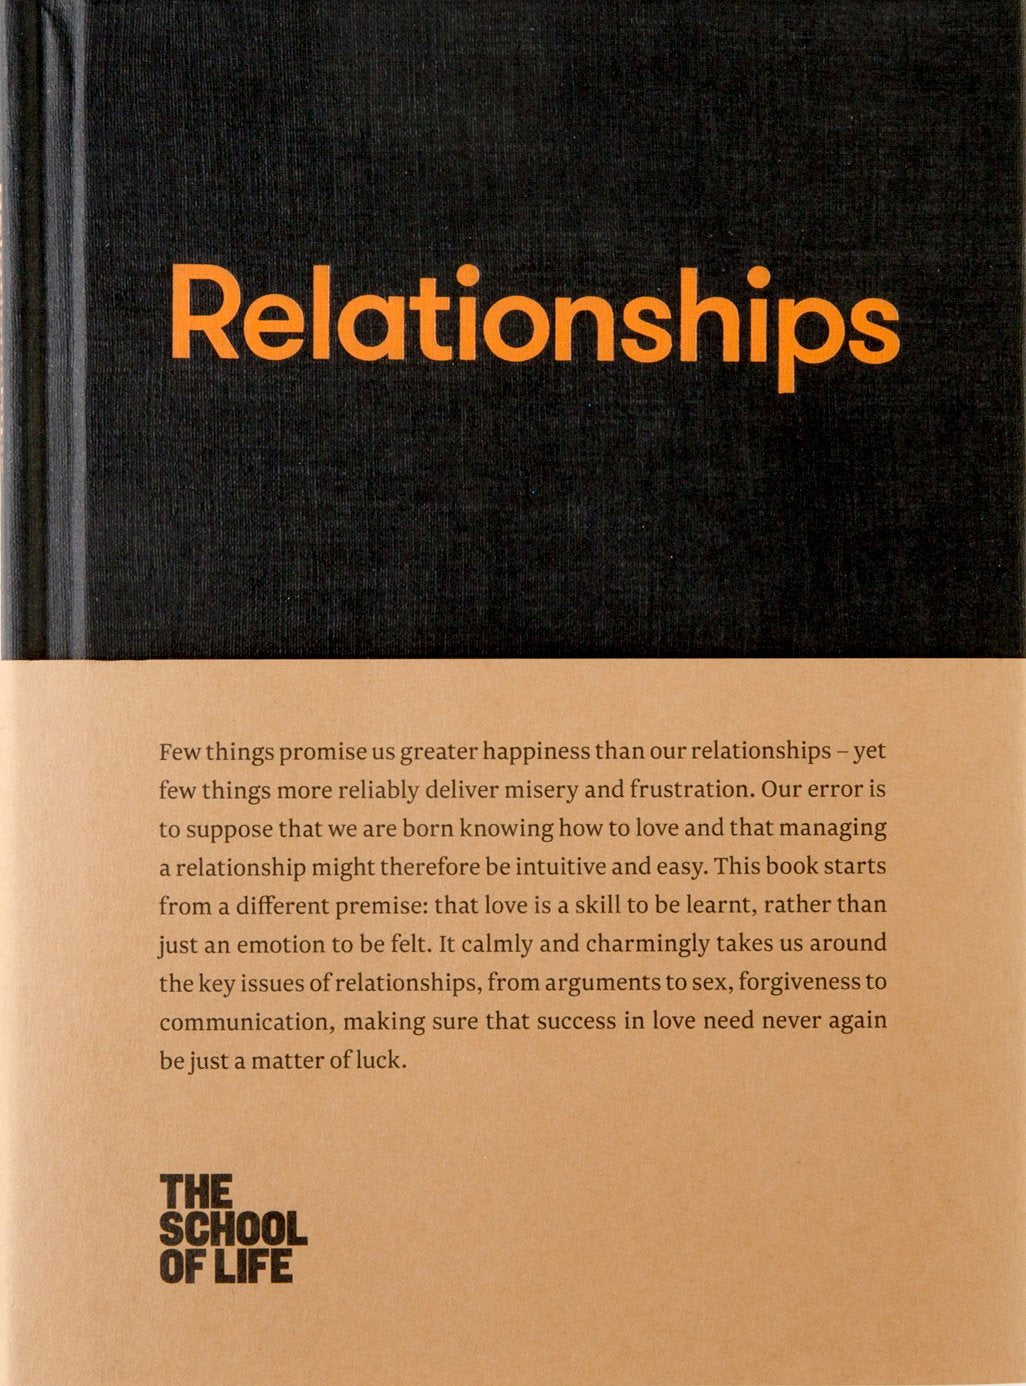 The School of Life Relationhips Book